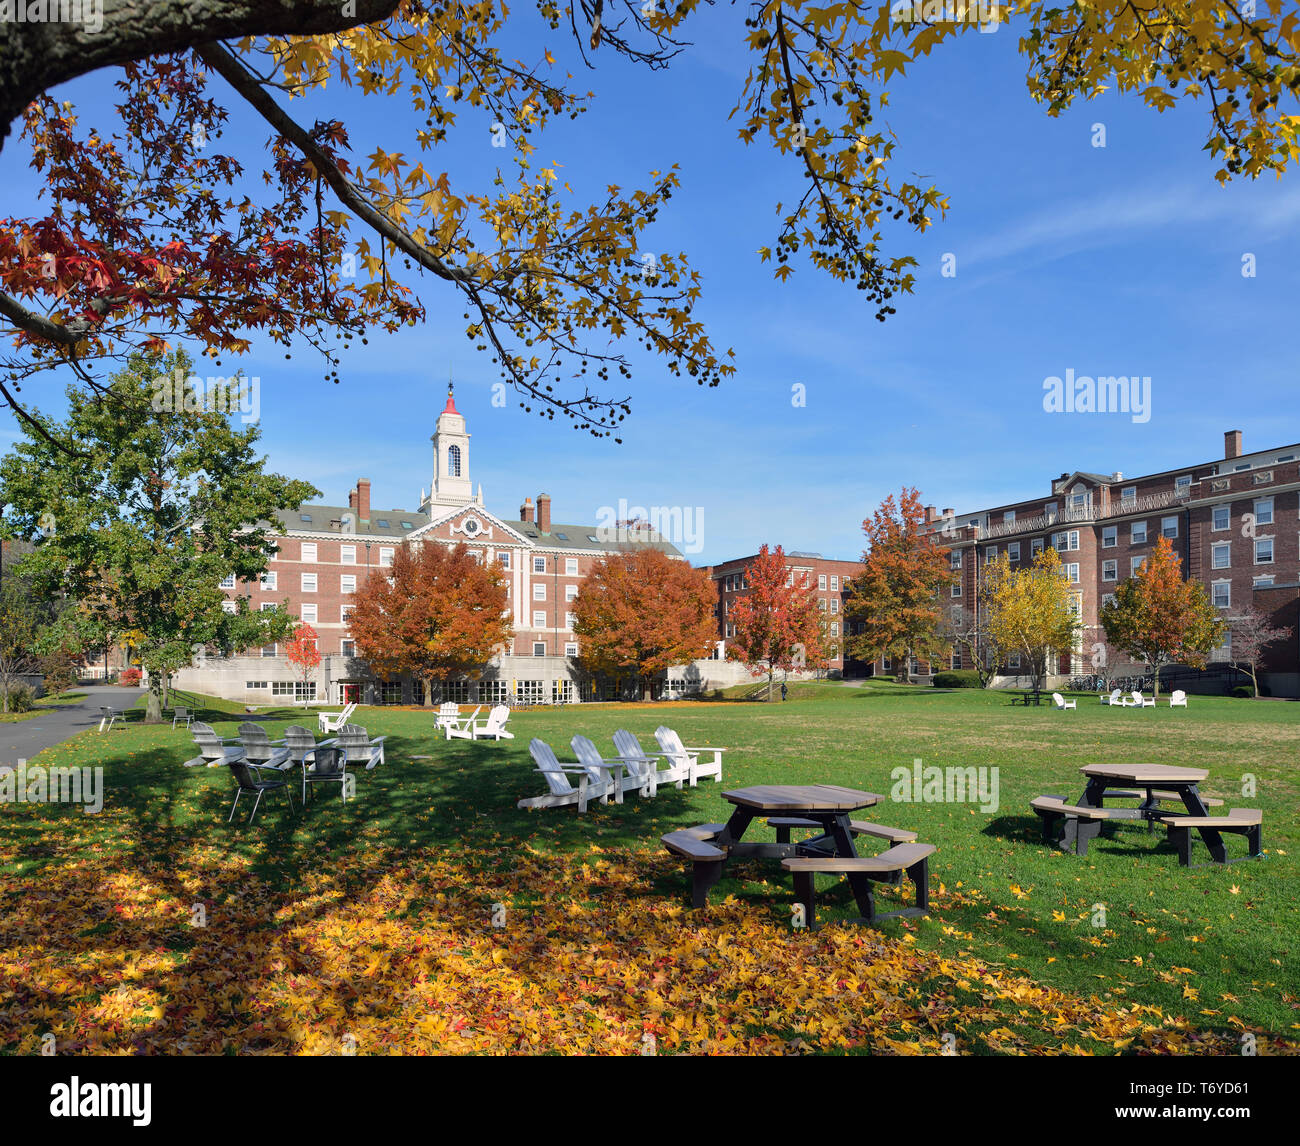 Radcliffe Quadrangle, Université de Harvard, à l'automne. La tour rouge, blanc, les bâtiments en brique, ciel bleu, herbe verte, chaises en bois, les feuilles d'automne… Banque D'Images